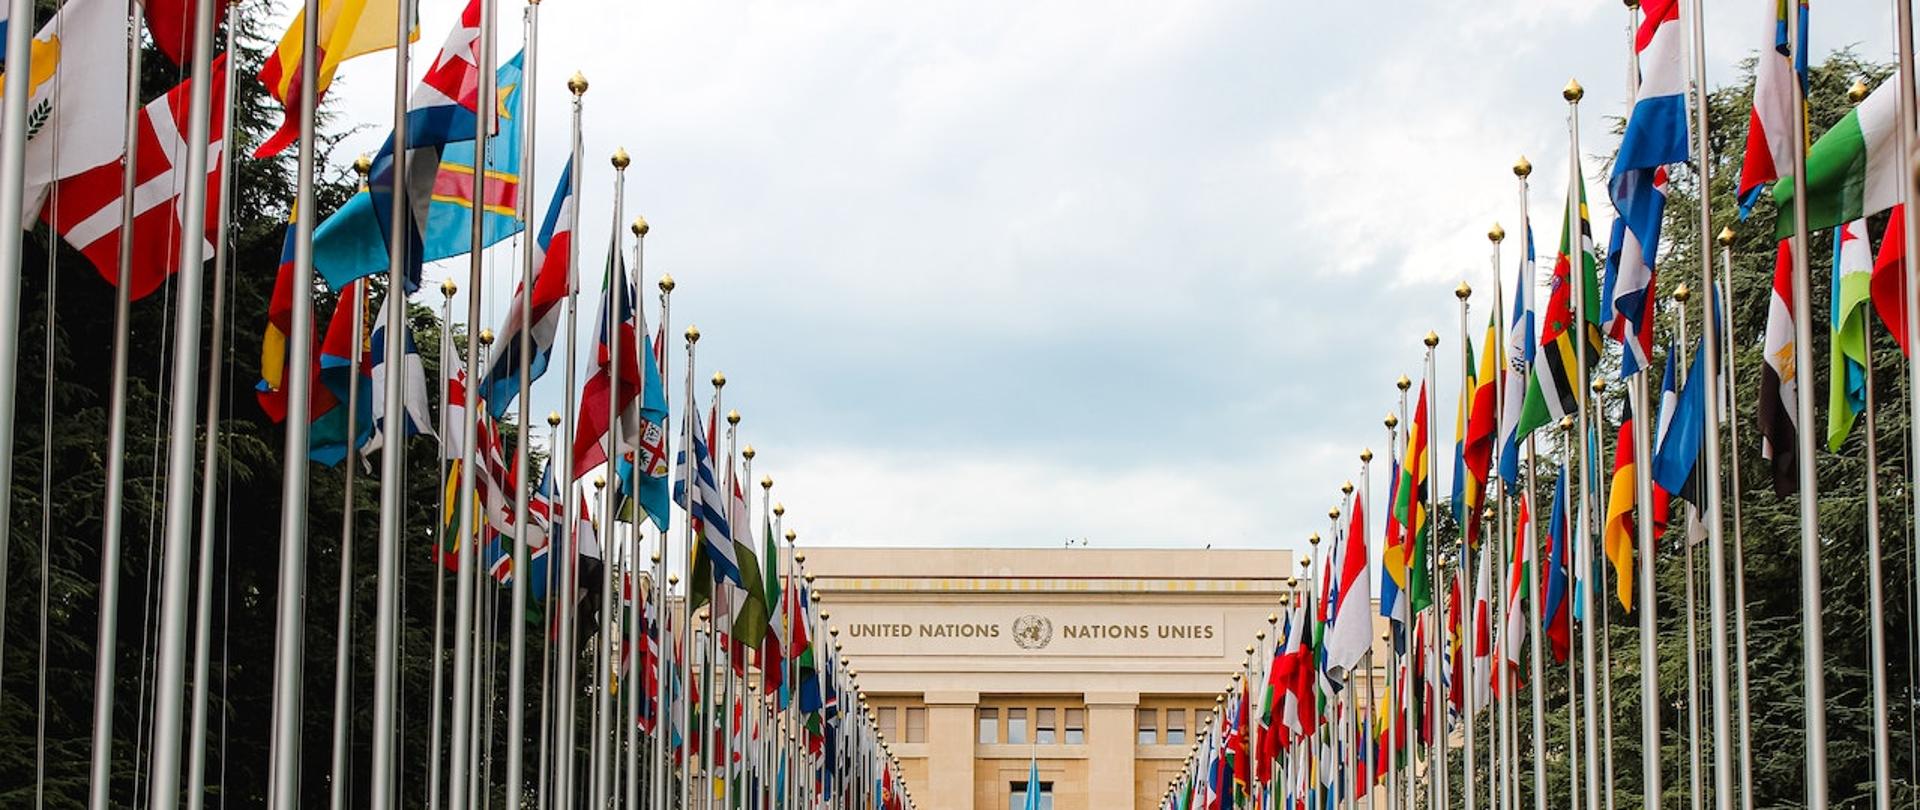 Na pierwszym planie znajdują się dwa rzędy flag z różnych państw świata, w tle Pałac Narodów - siedziba Organizacji Narodów Zjednoczonych w Genewie.